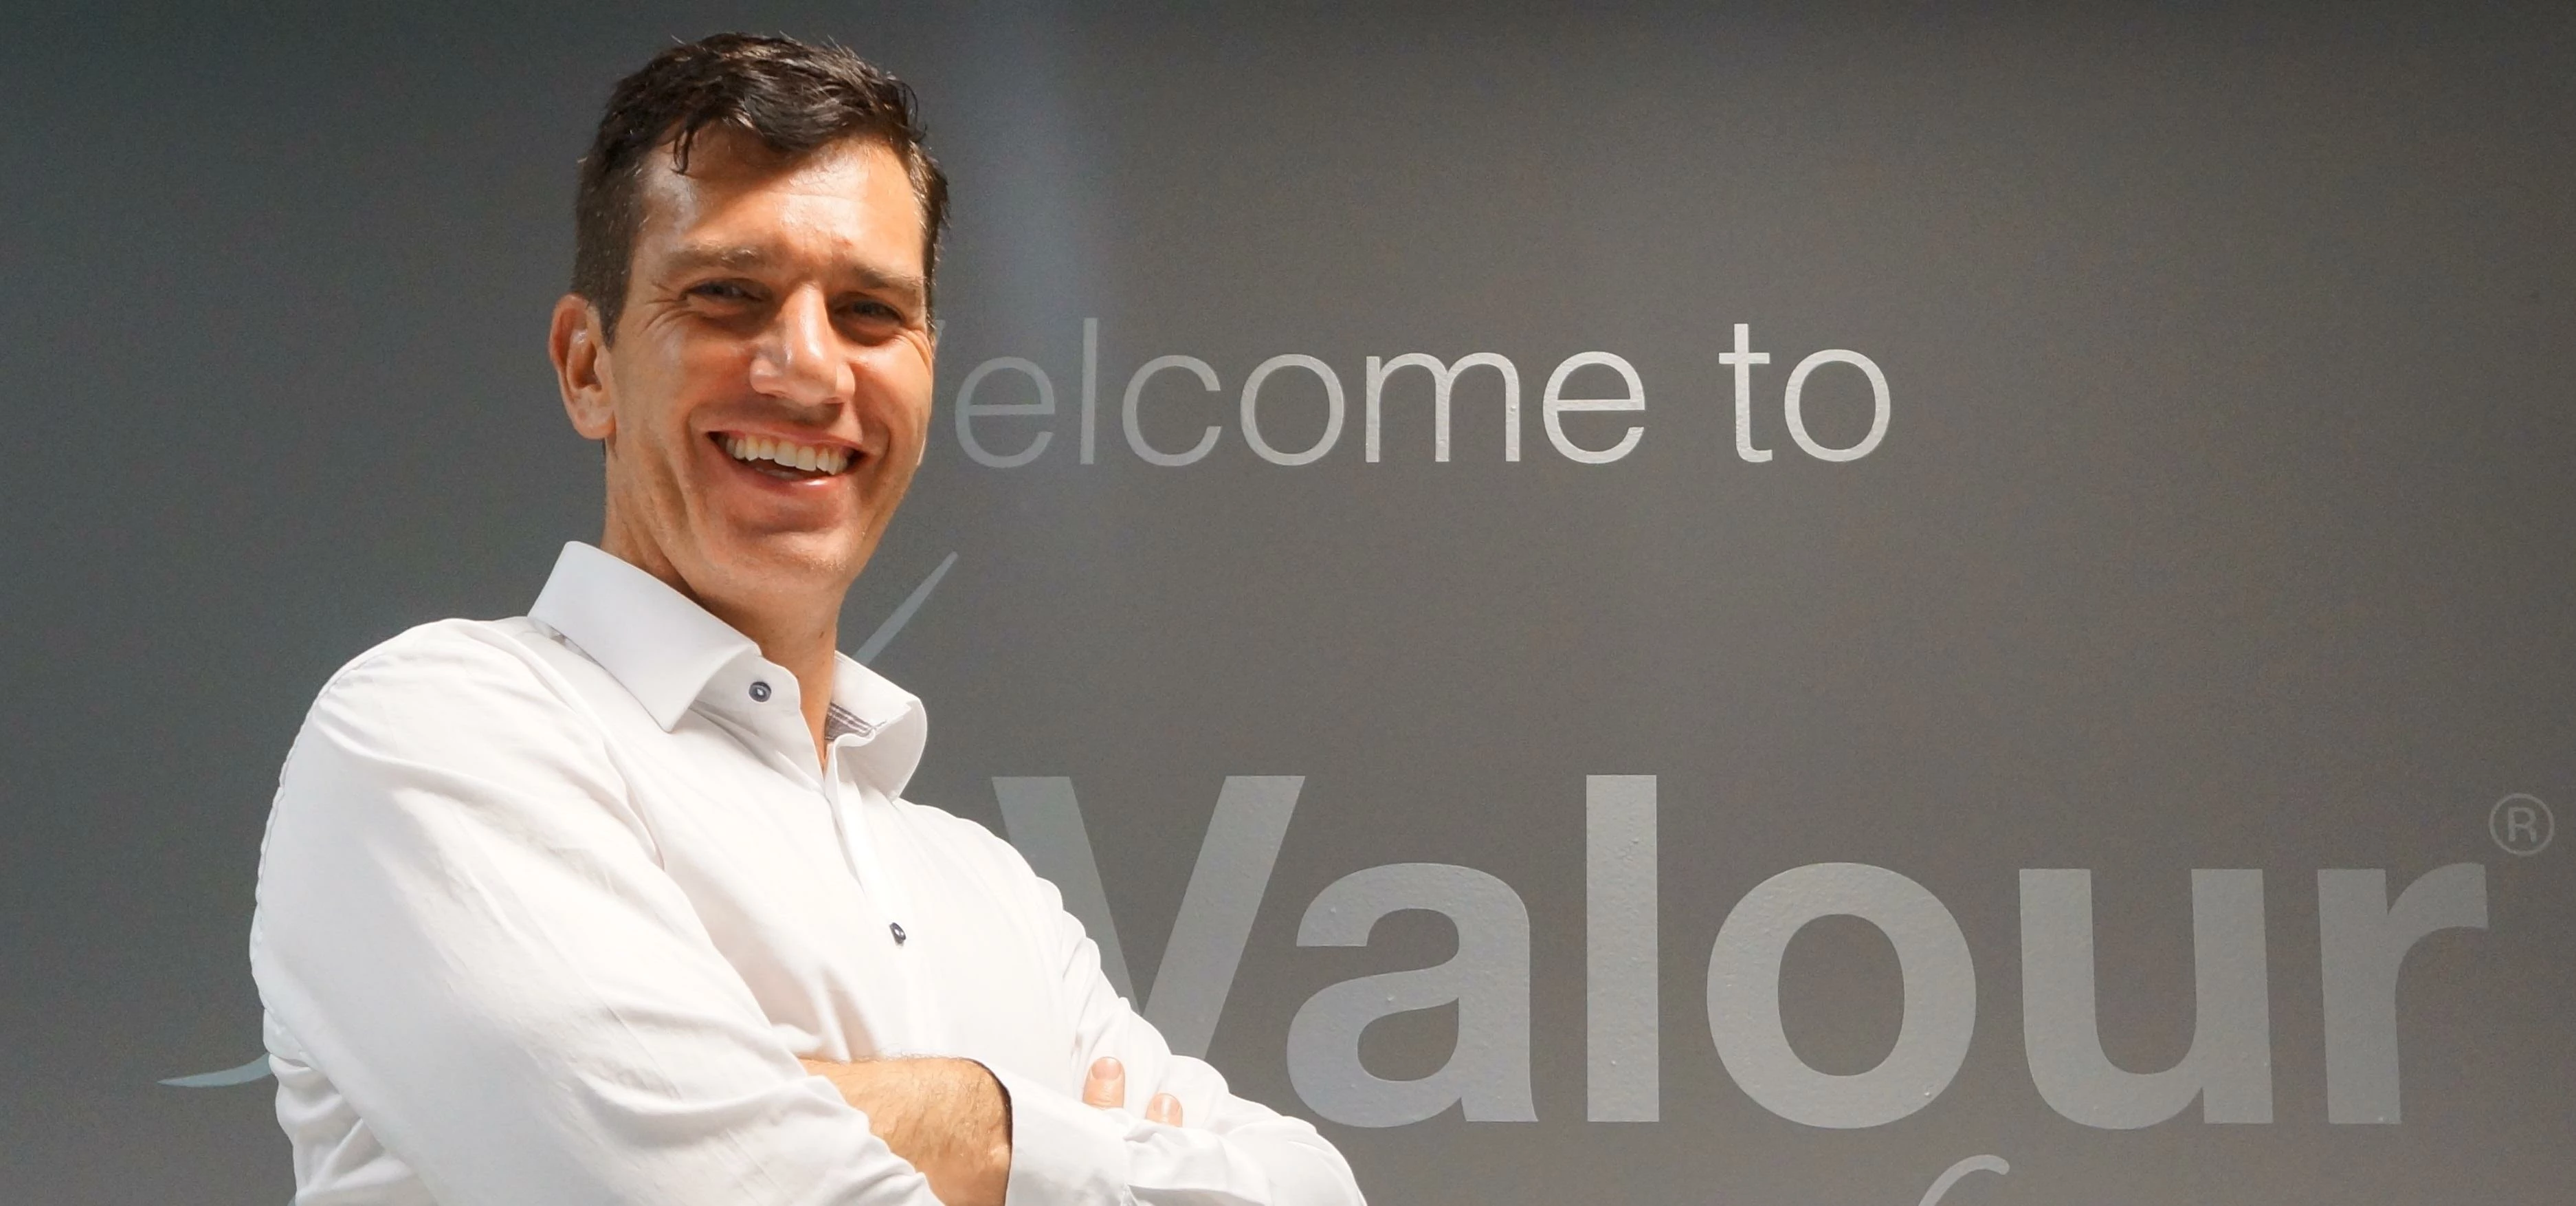 Mark Bowker, CEO of Valour Finance Group